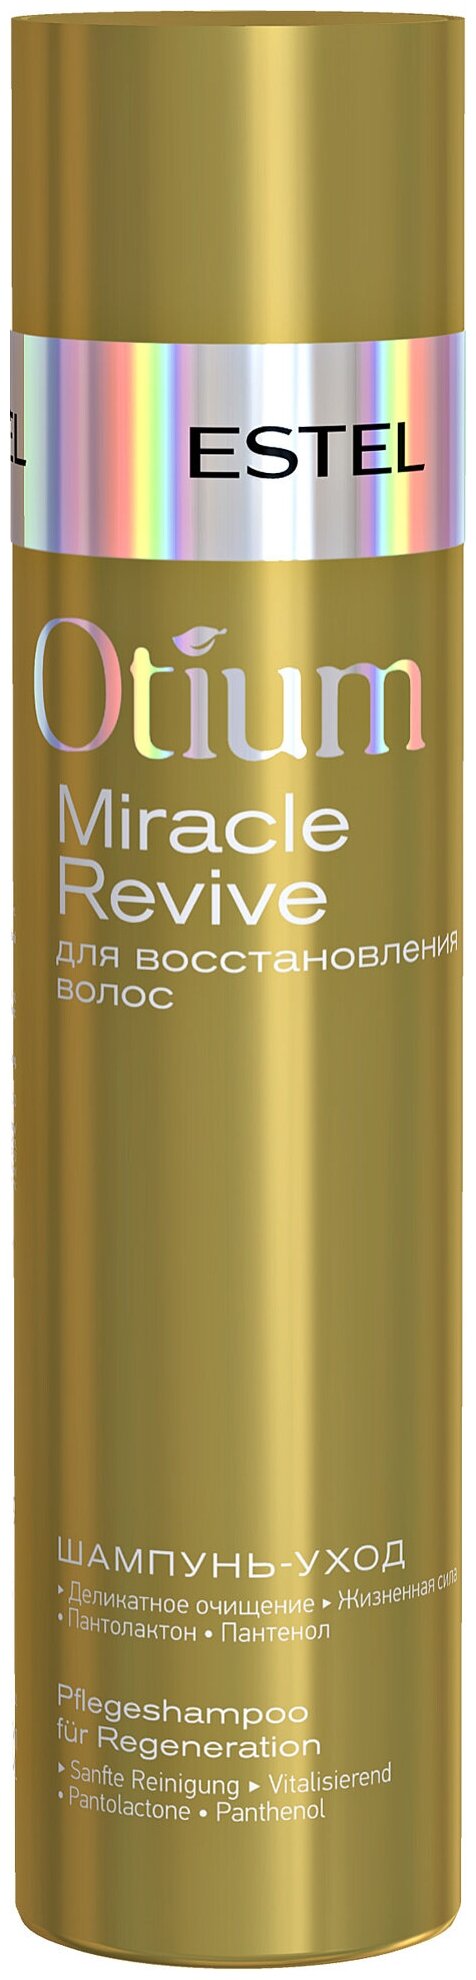 Estel Professional Шампунь-уход для восстановления волос OTIUM MIRACLE REVIVE, 250 мл